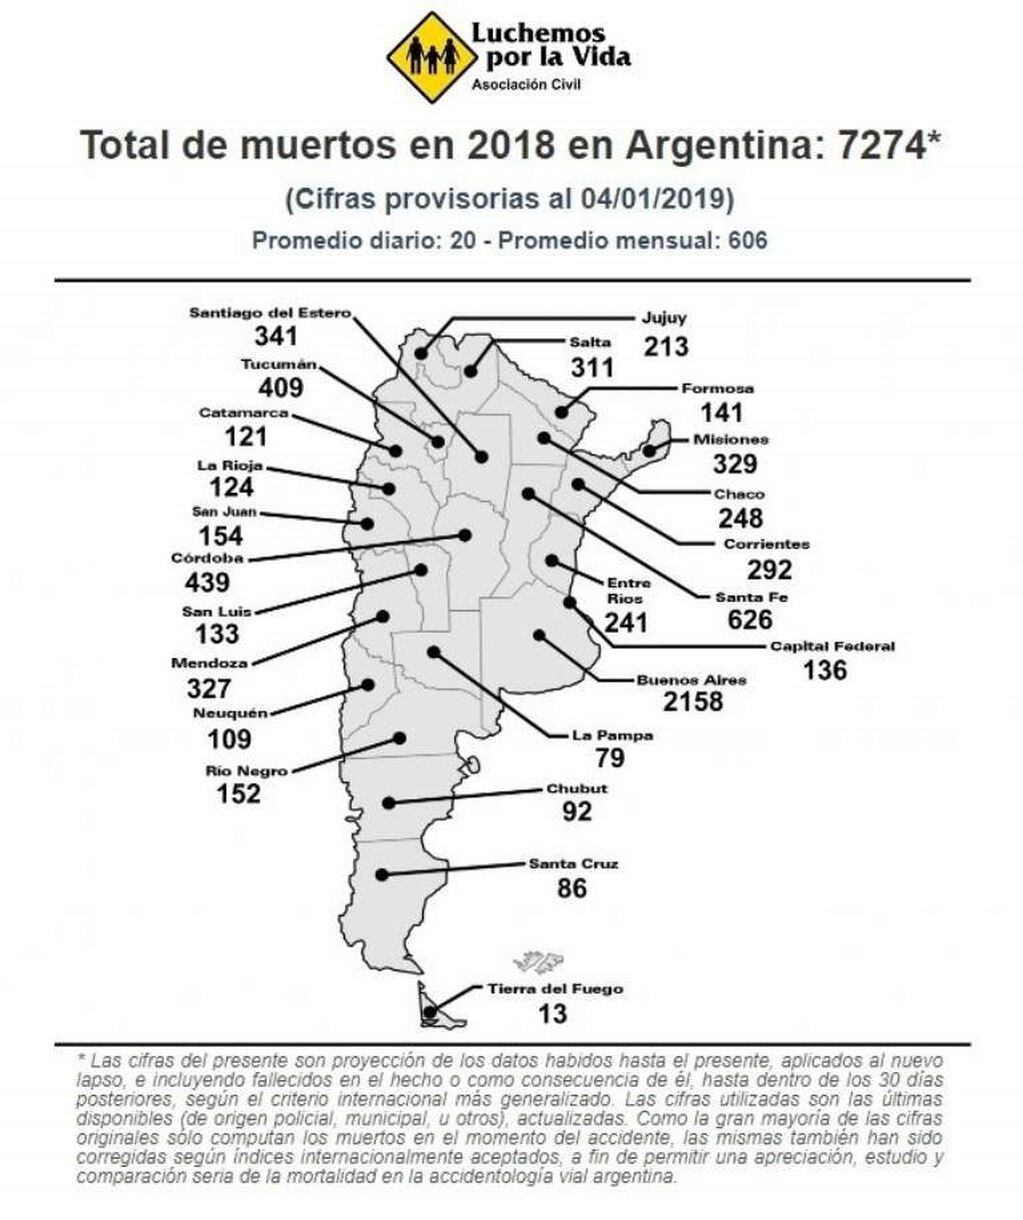 Total de muertos en 2018 en Argentina